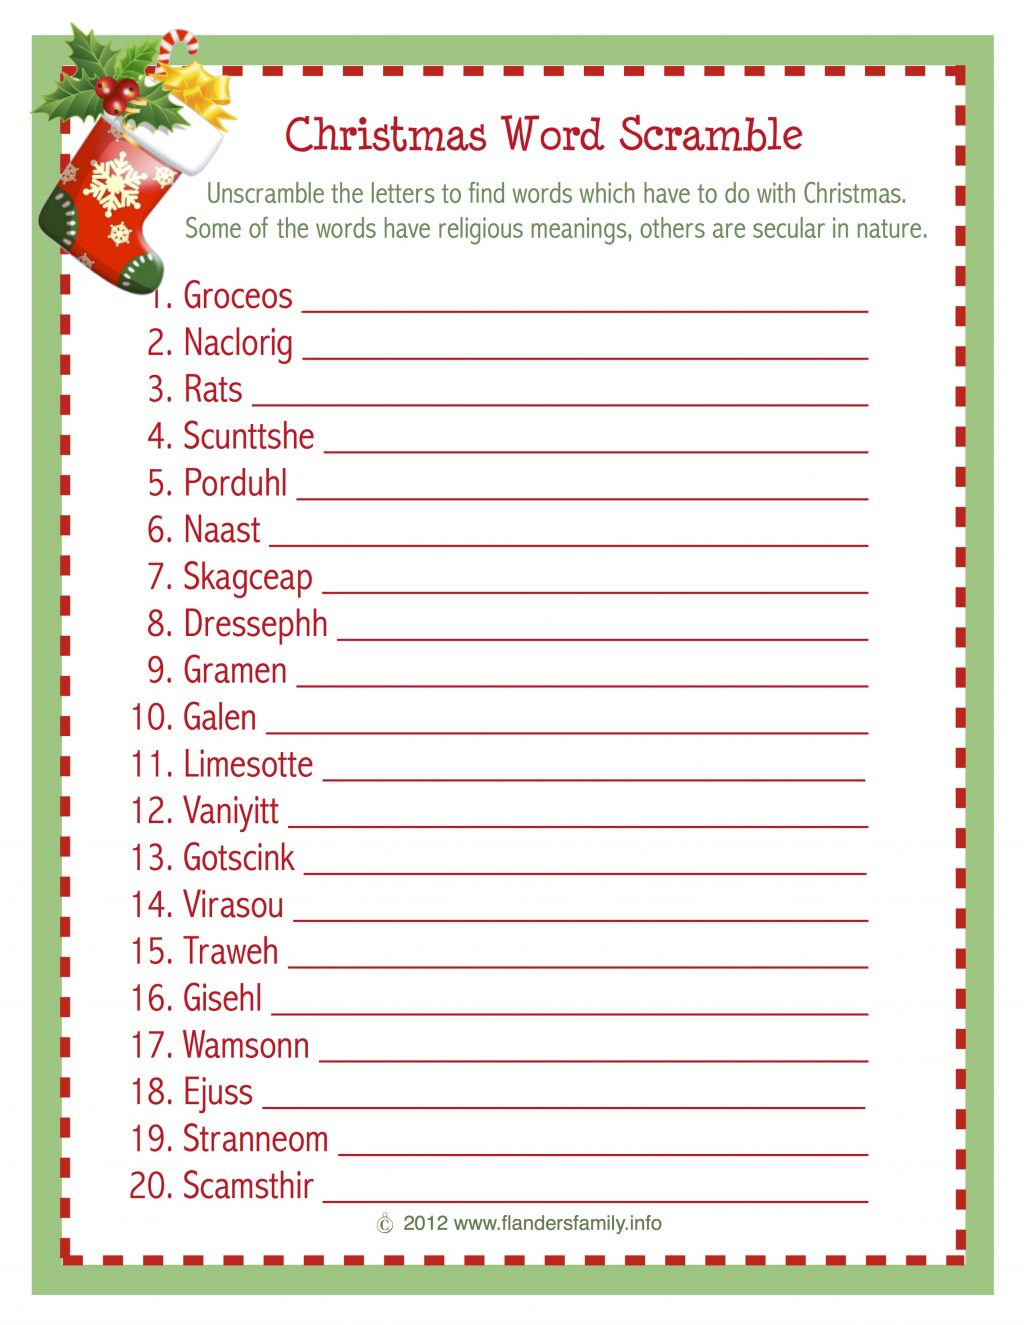 Christmas Word Scramble (Free Printable) - Flanders Family Homelife - Printable Christmas Puzzle Games